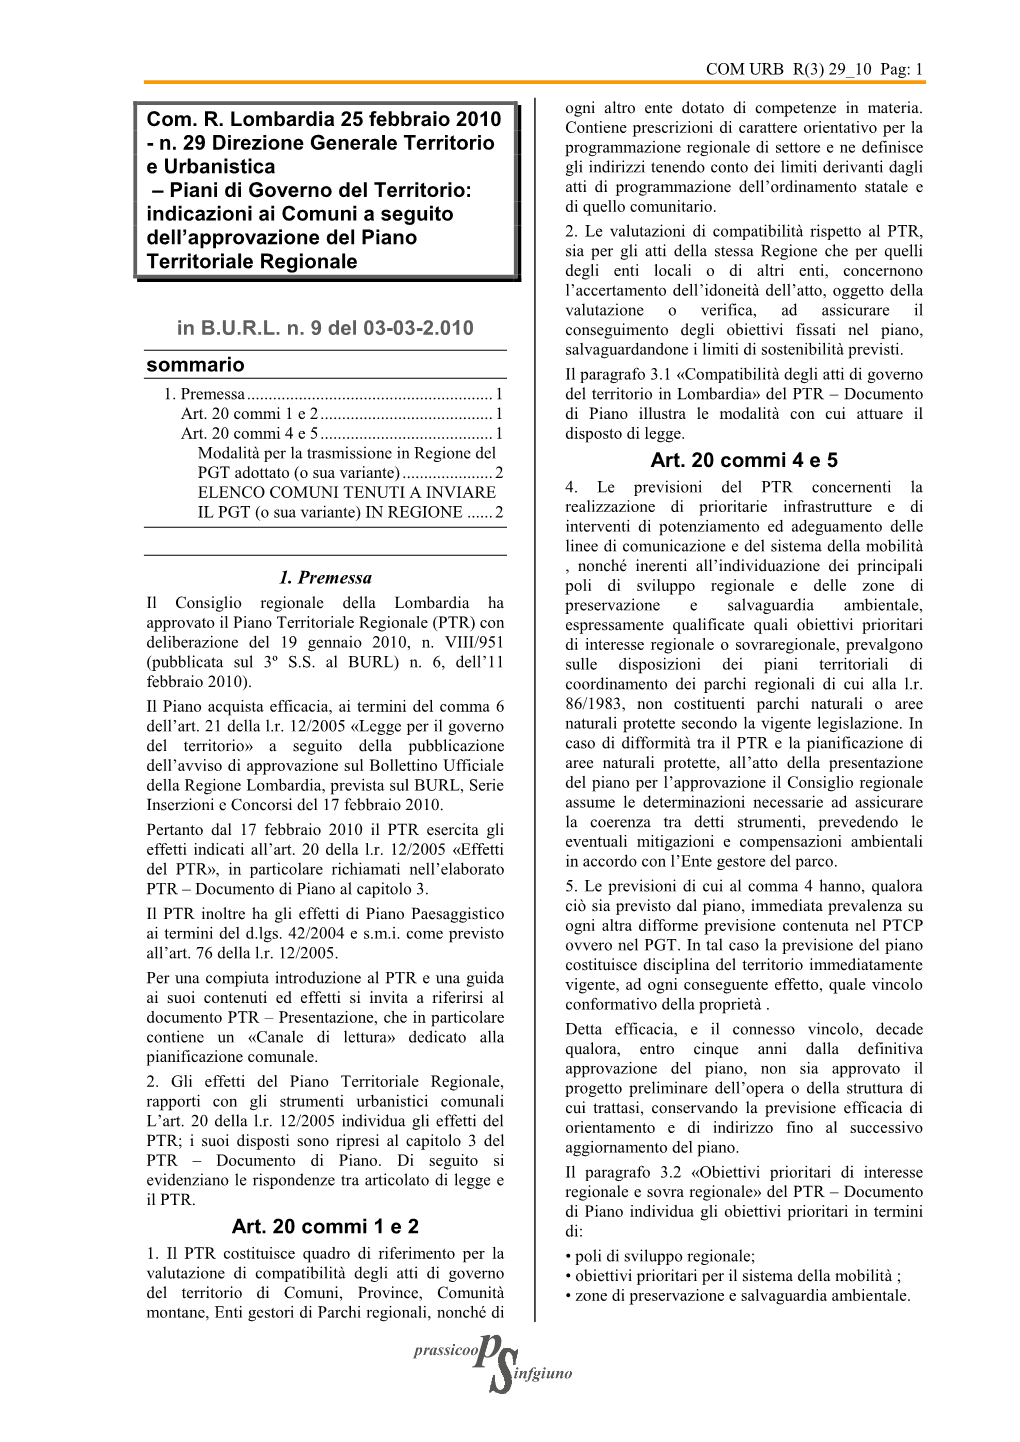 Com. R. Lombardia 25 Febbraio 2010 Contiene Prescrizioni Di Carattere Orientativo Per La - N